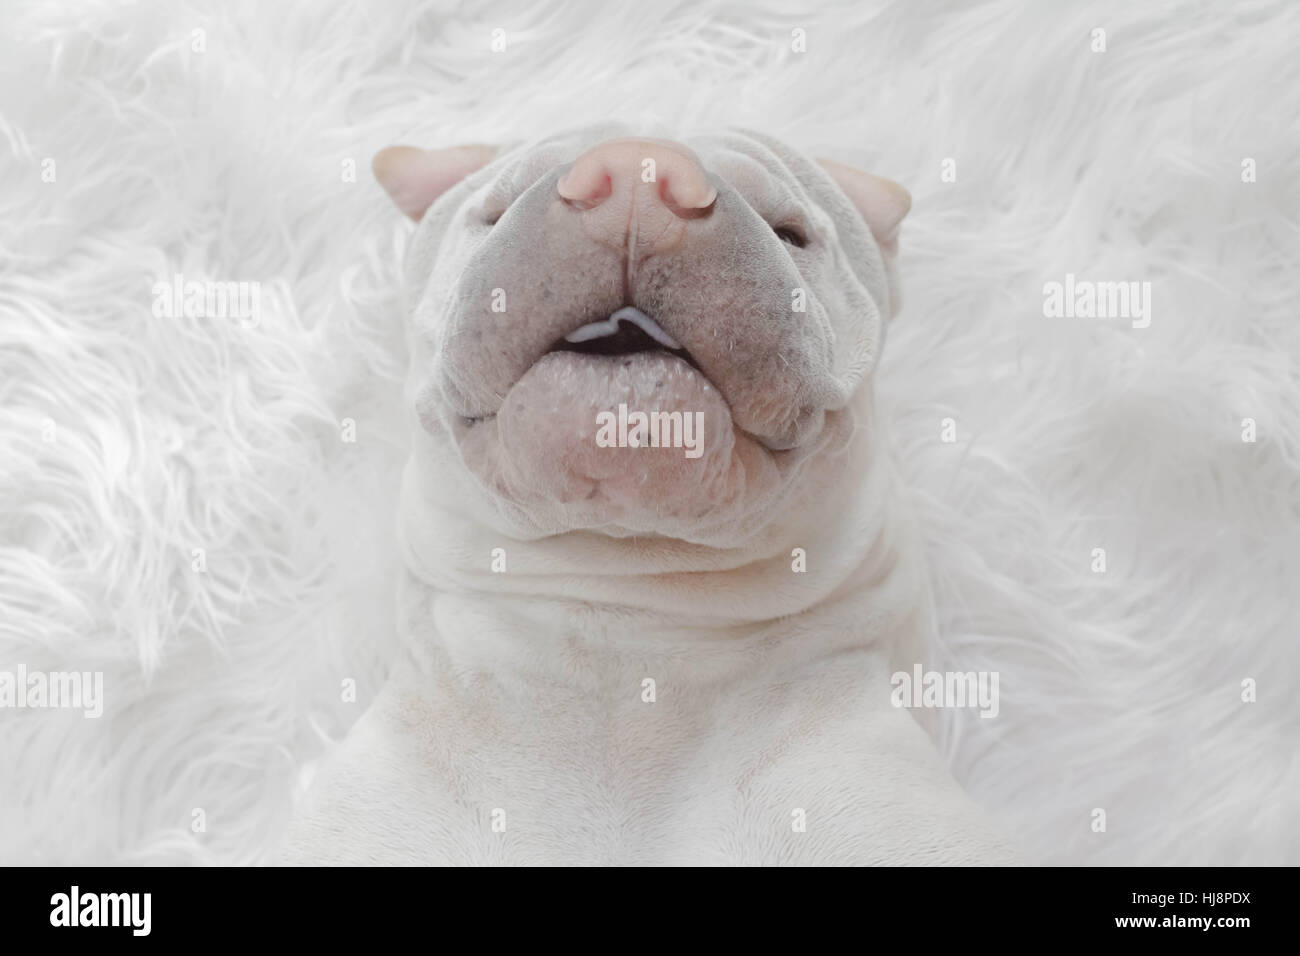 Vue de dessus de Shar Pei chien couché sur un tapis blanc Banque D'Images